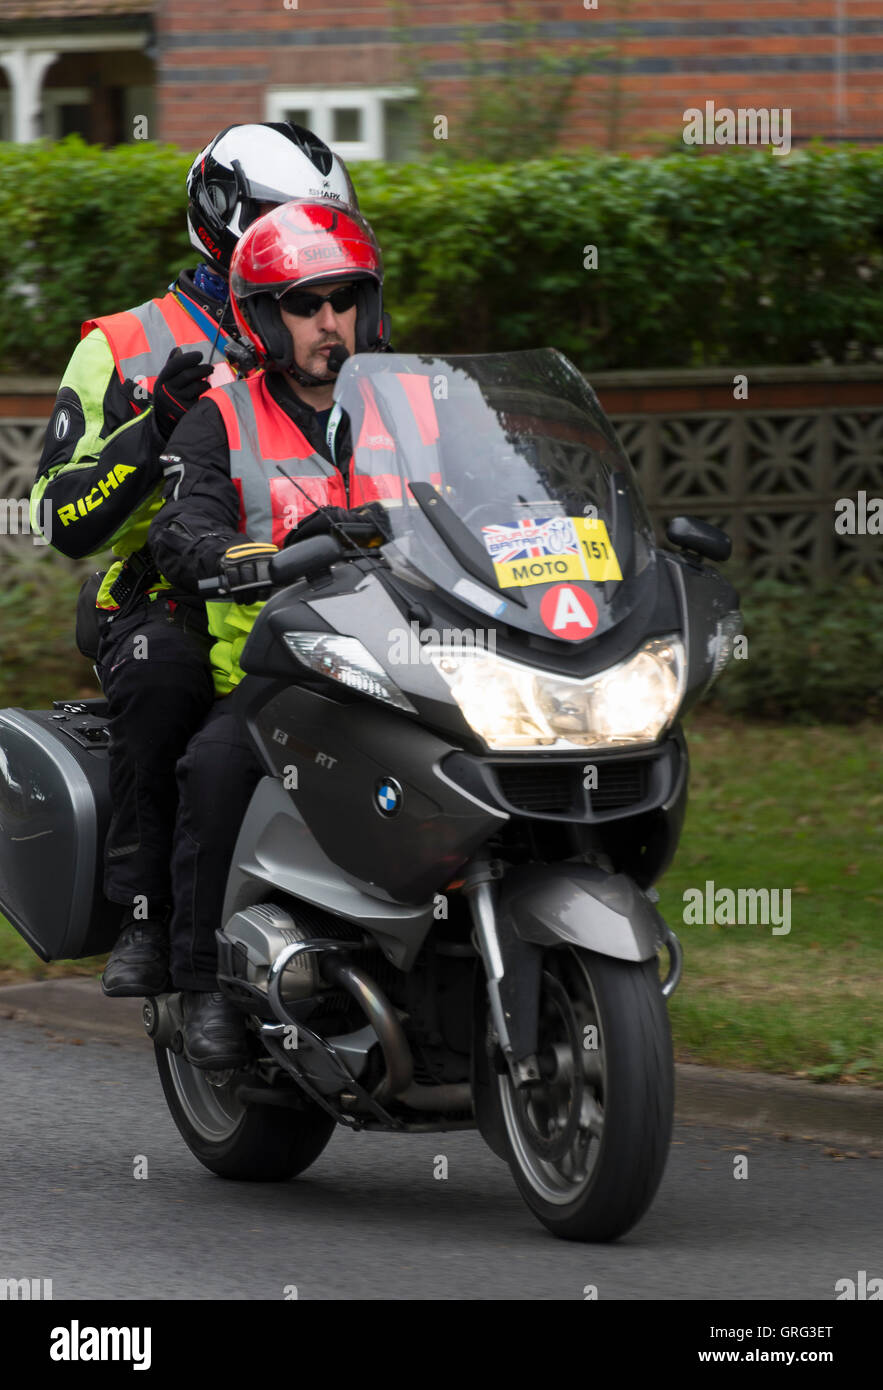 Motorradfahrer und Pillion Passenger nach dem Tour of Britain Cycle Race durch Alsager Cheshire England Großbritannien Großbritannien Stockfoto